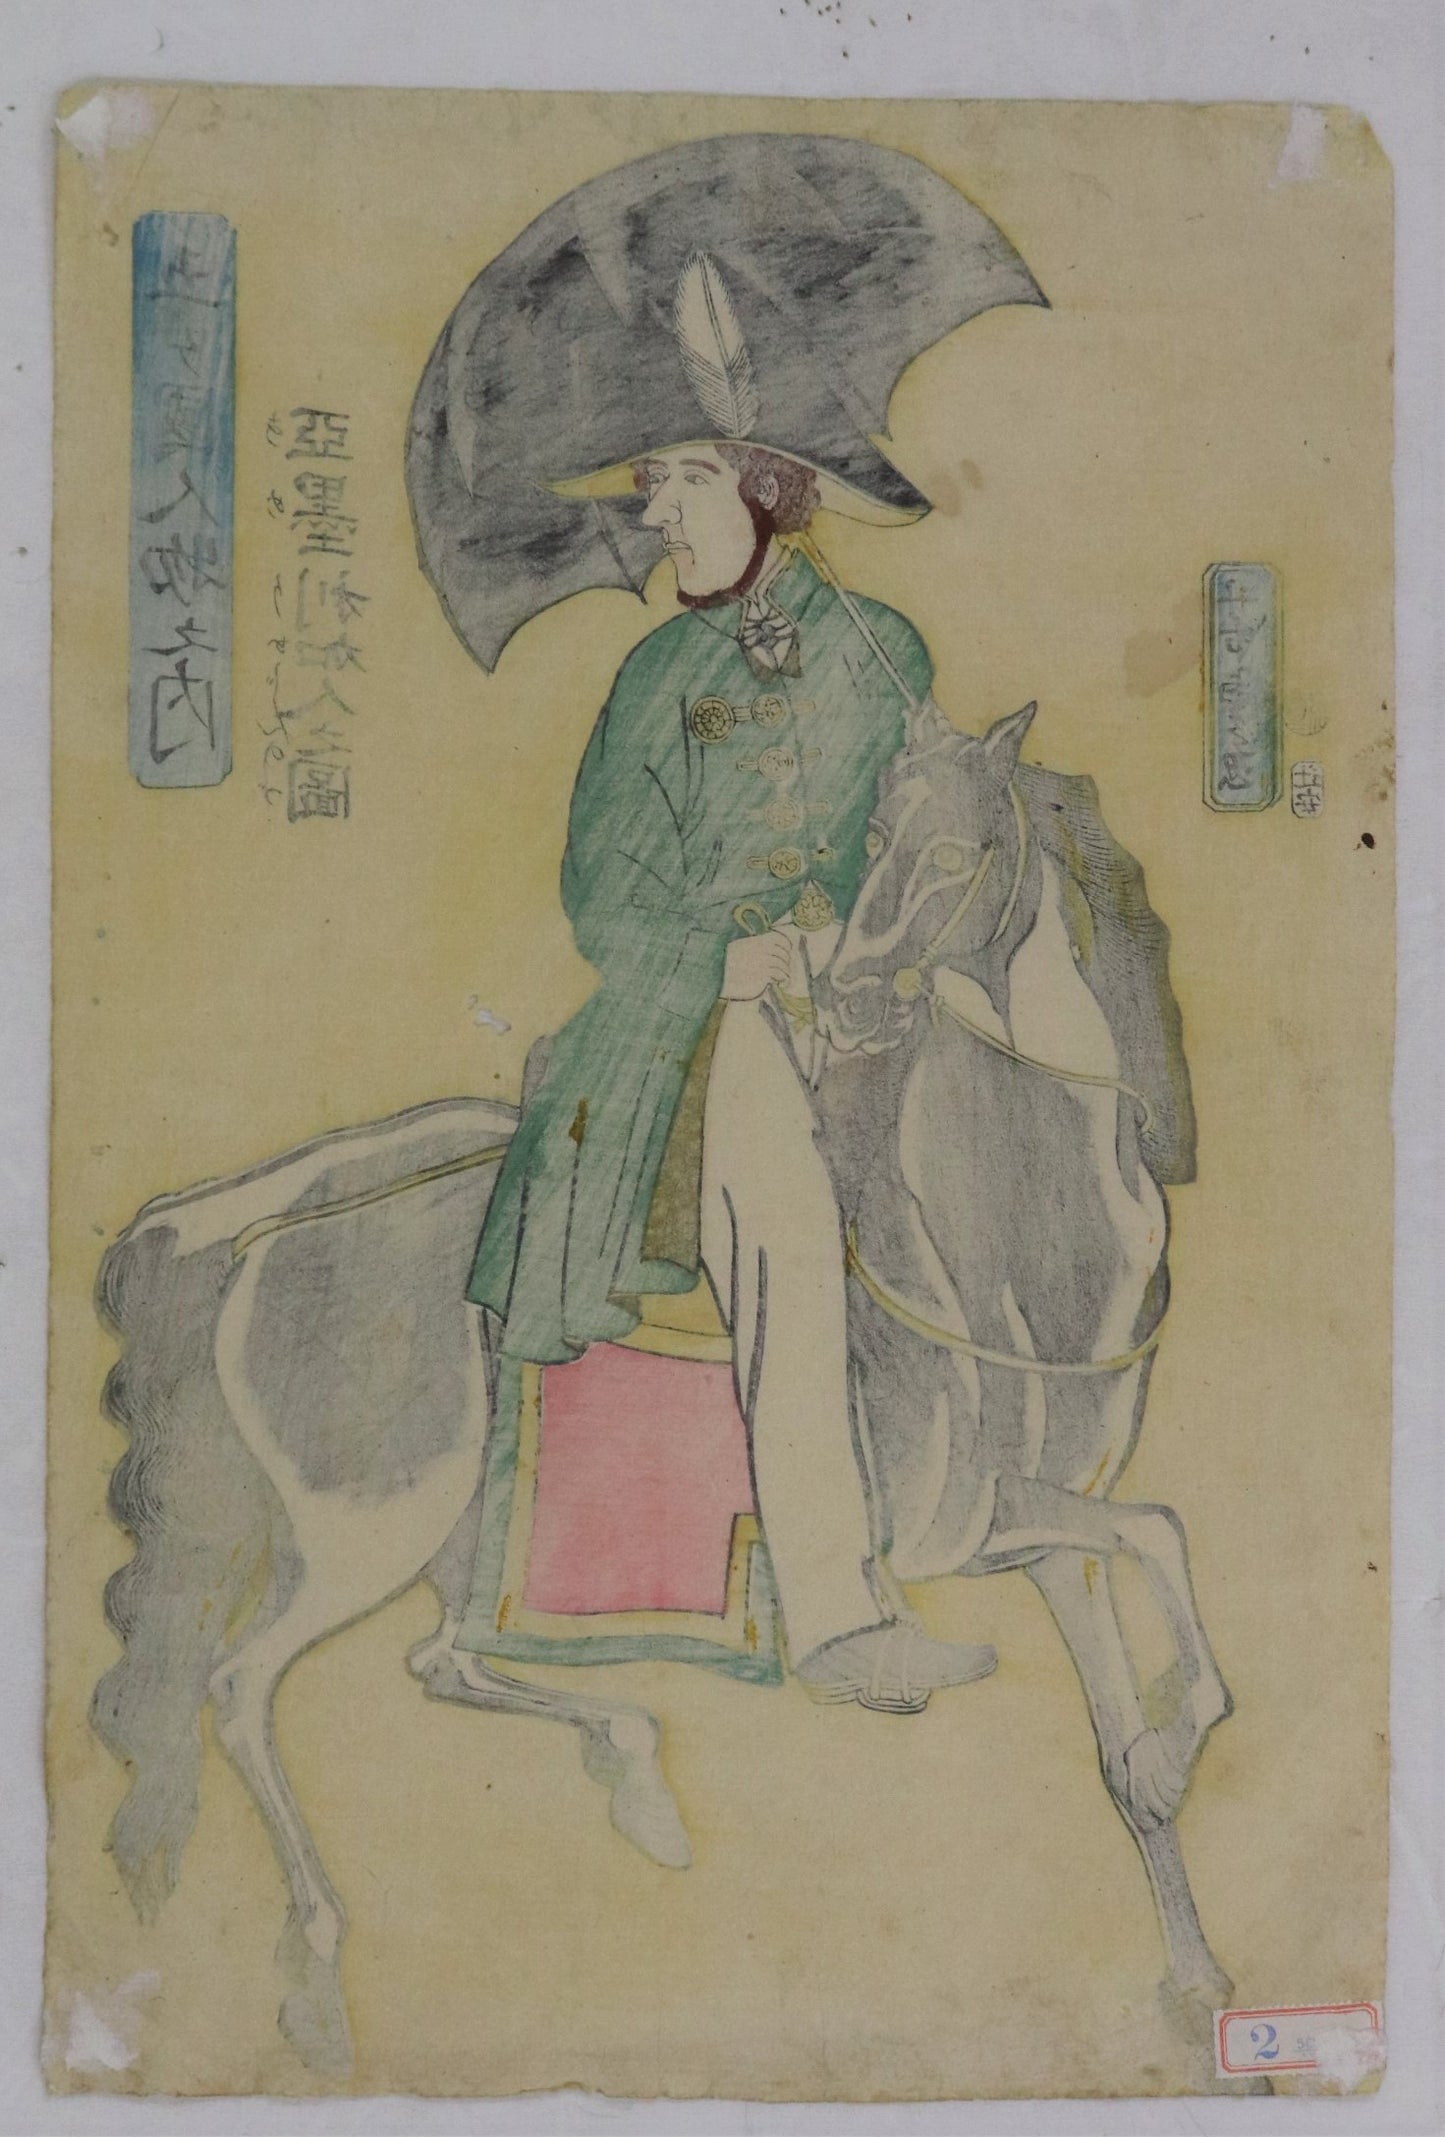 American on horseback from the series "People from the five countries "by Yoshitora / Américain sur le dos d'un cheval de la série des "personnes des cinq pays" par Yoshitora (1861)